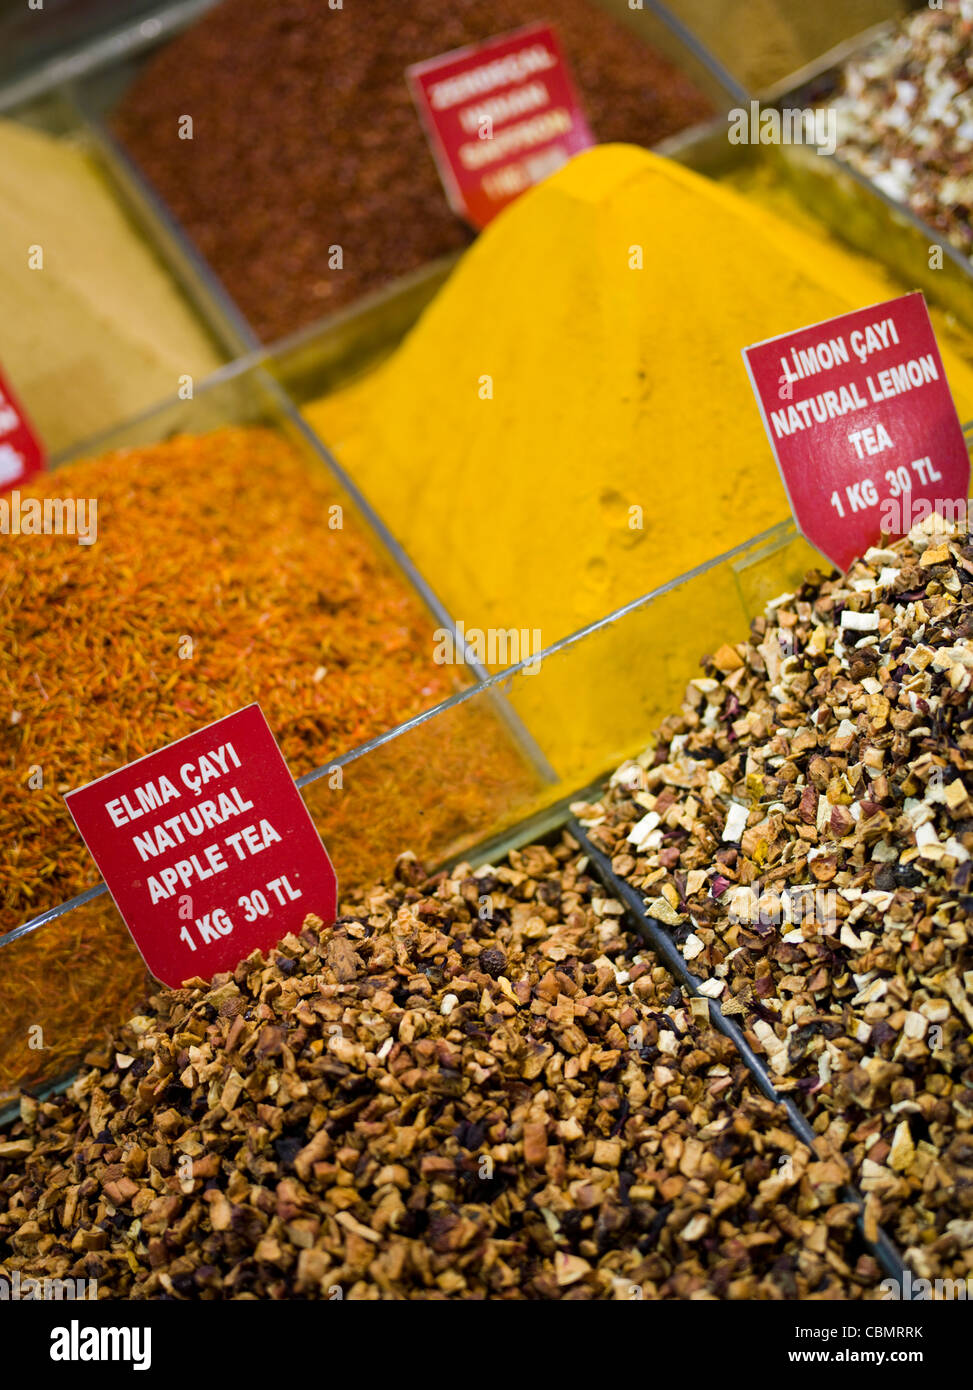 Spice Bazaar, in Fatih, Eminönü, Istanbul, Turkey Stock Photo